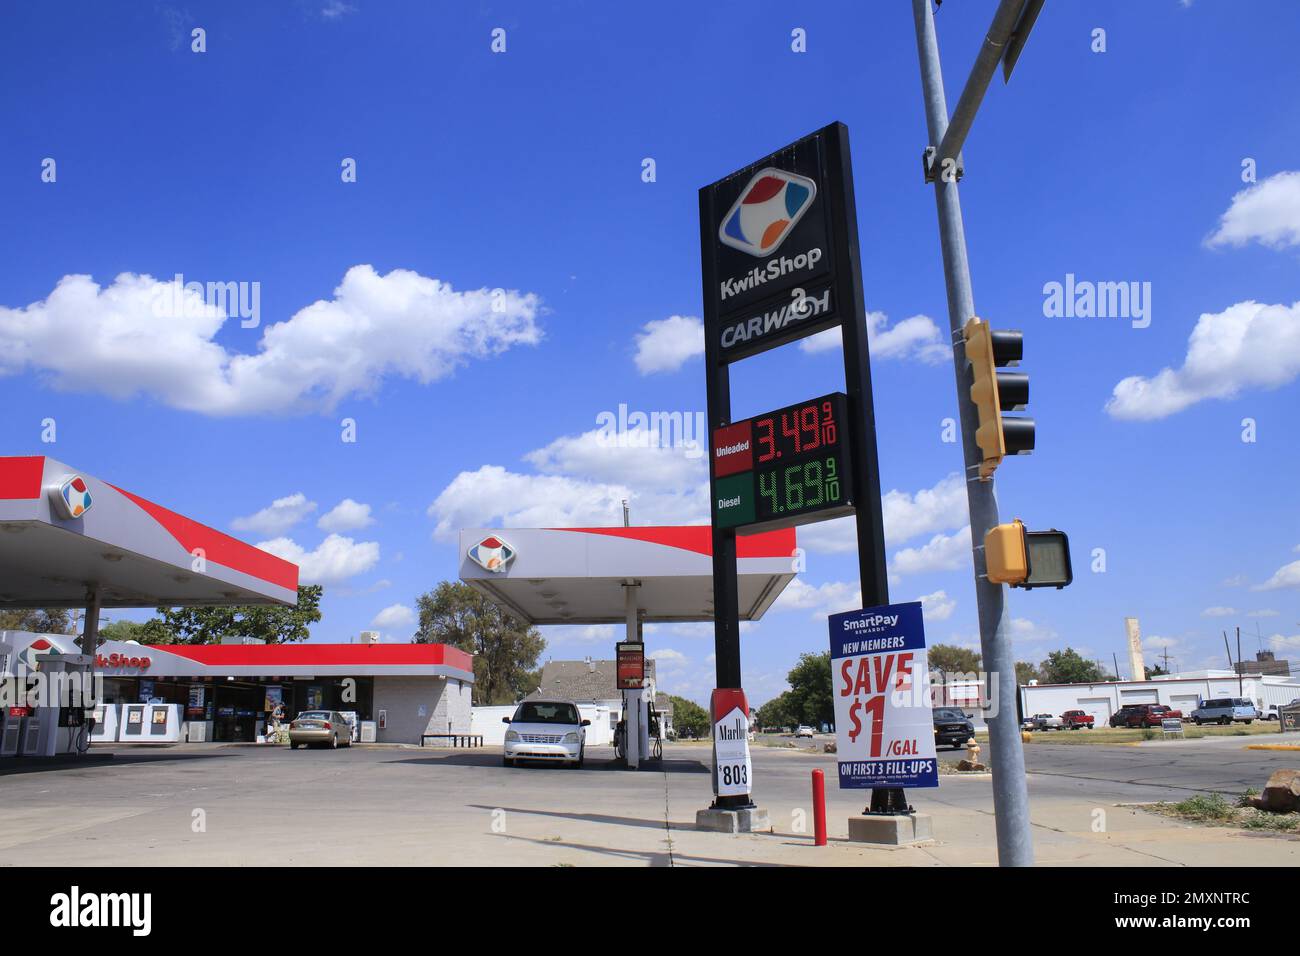 KWIK SHOP, distributore di benzina, minimarket aperto 24 ore su 24 con cielo blu e nuvole Foto Stock